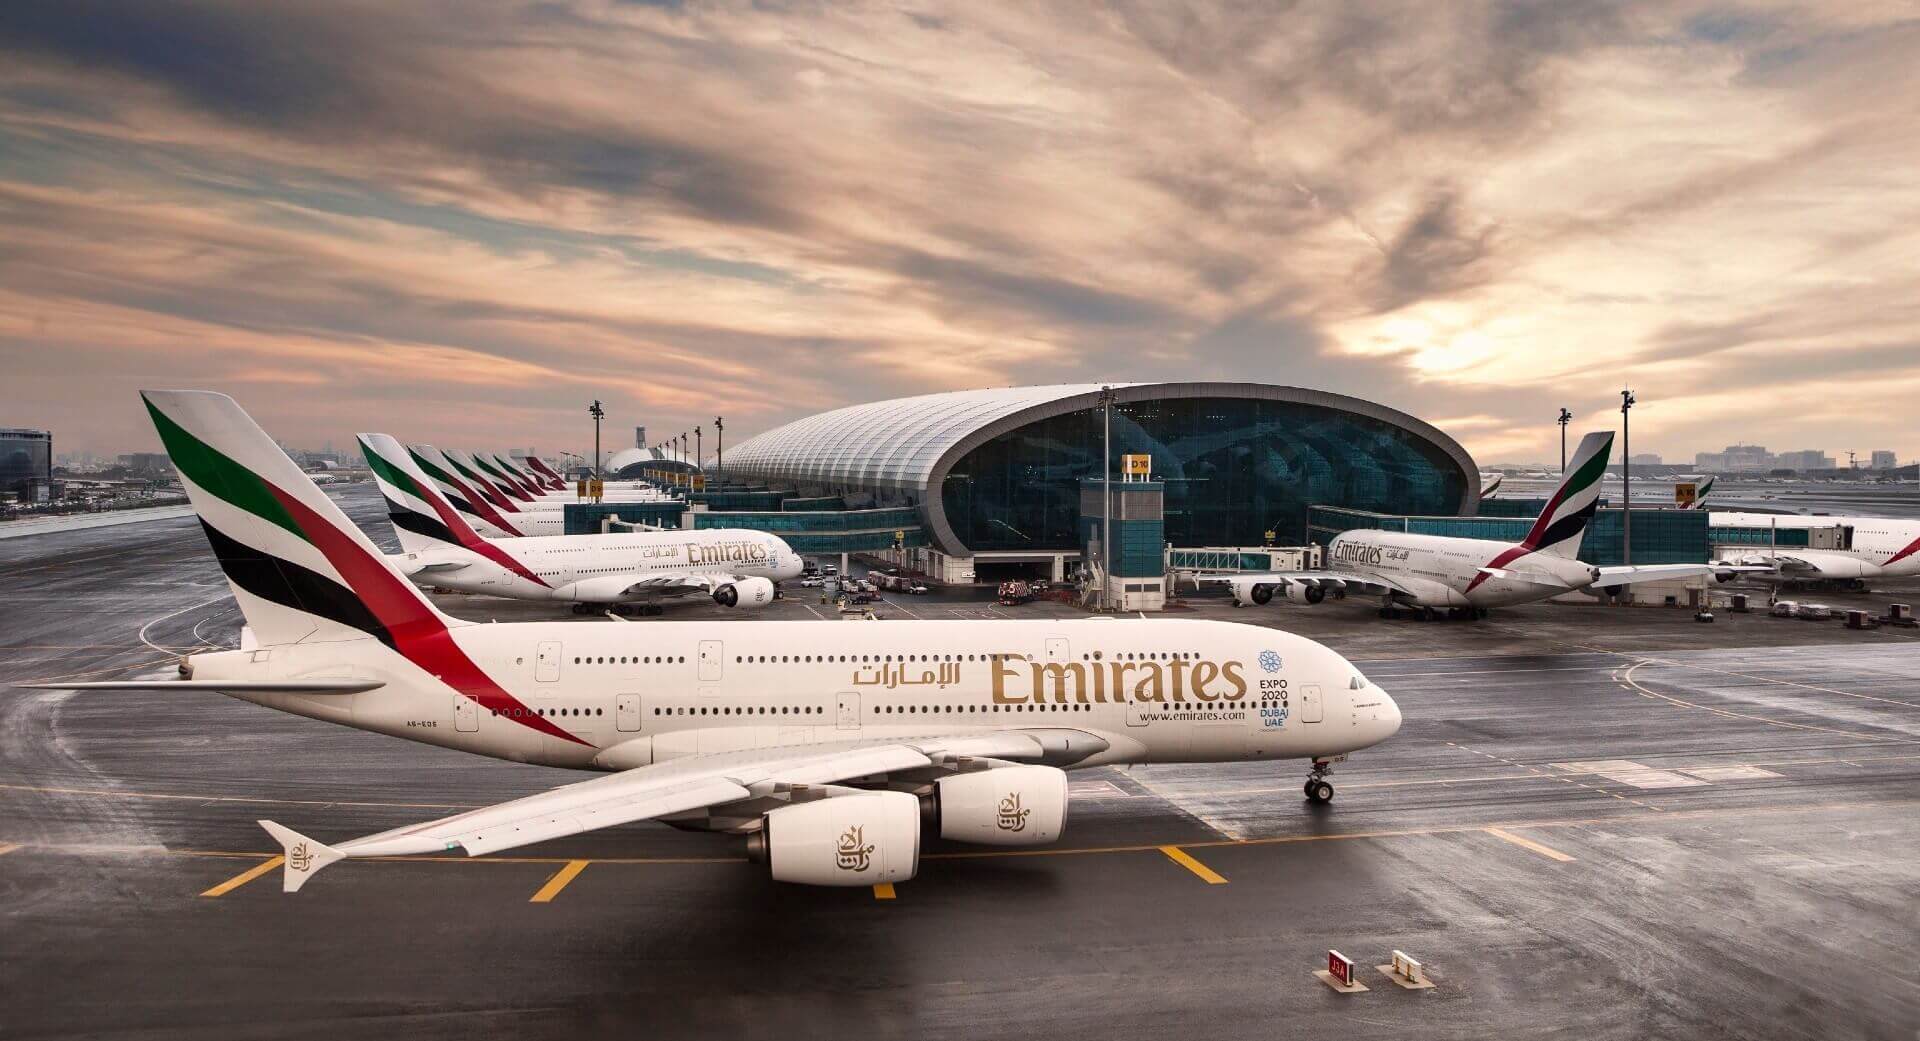 Verbotene Gegenstände am Flughafen Dubai: Was Sie nicht mitnehmen sollten